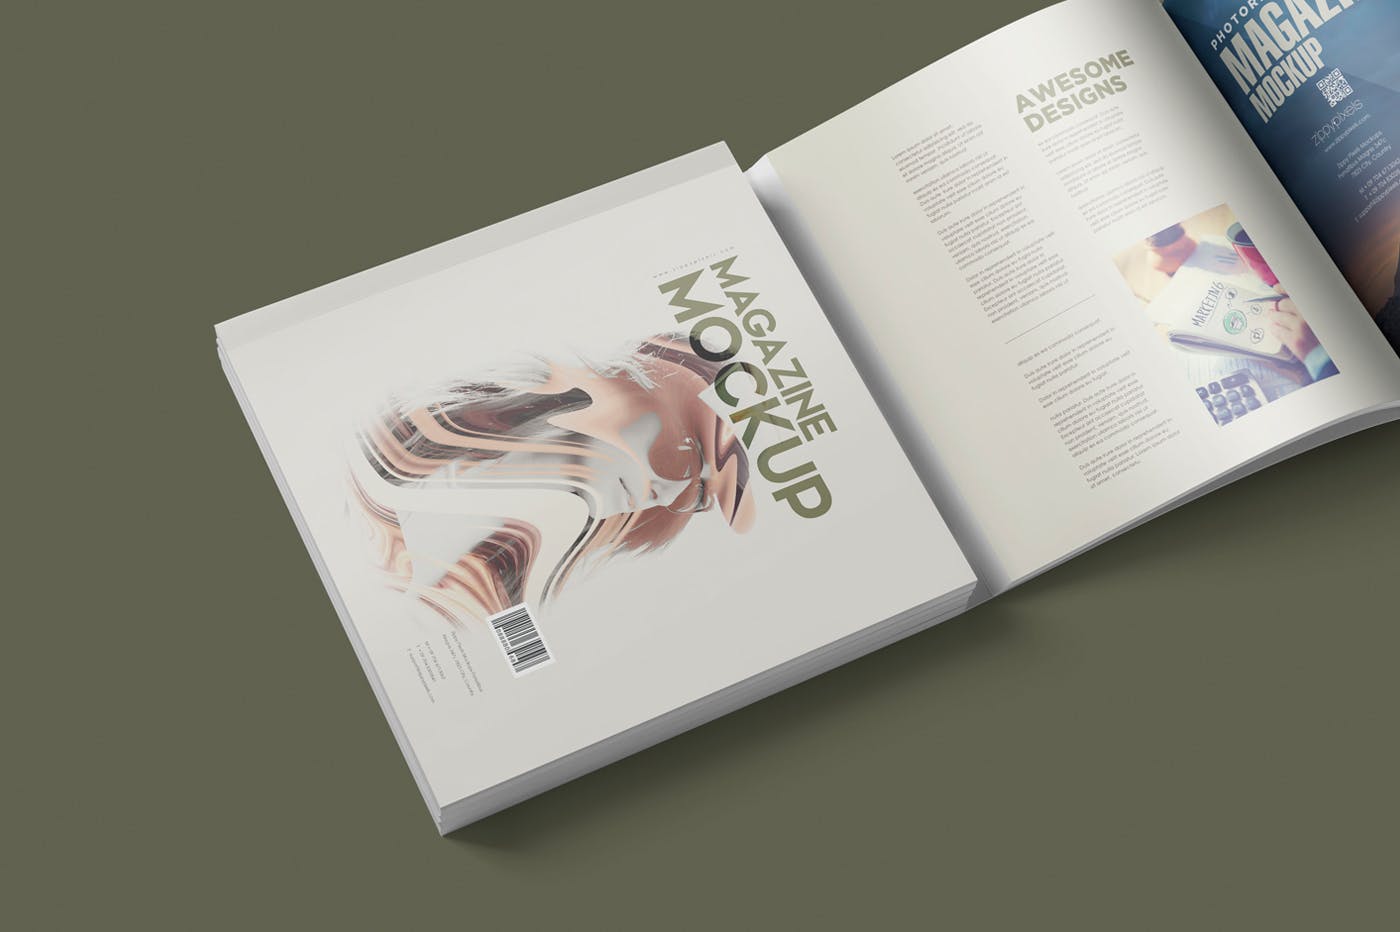 方形杂志印刷效果图样机非凡图库精选PSD模板 Square Magazine Mockup Set插图(3)